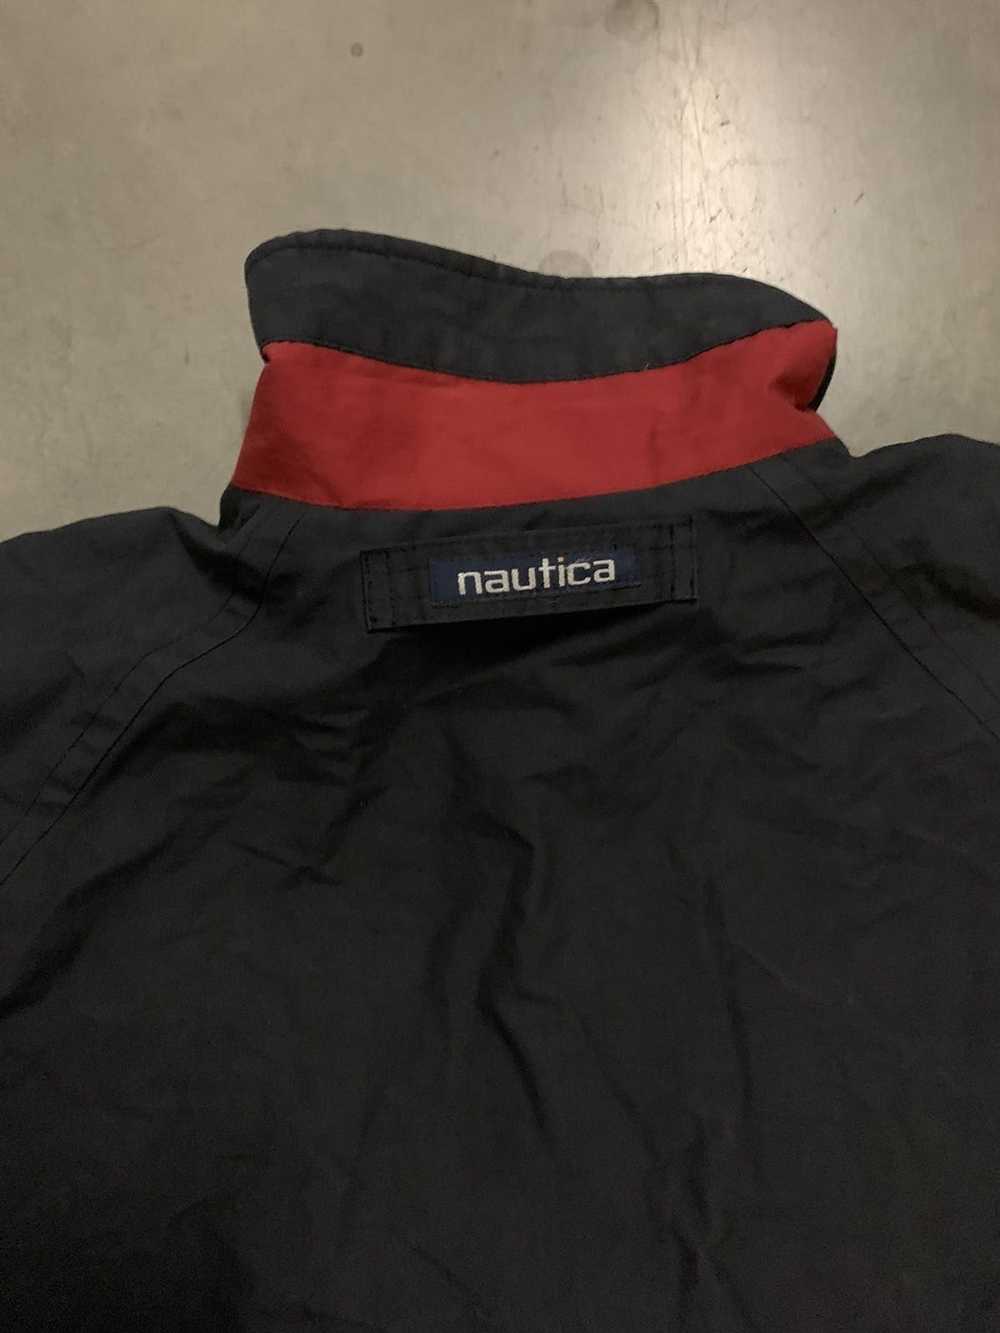 Nautica × Vintage Nautica Vintage Jacket - image 3